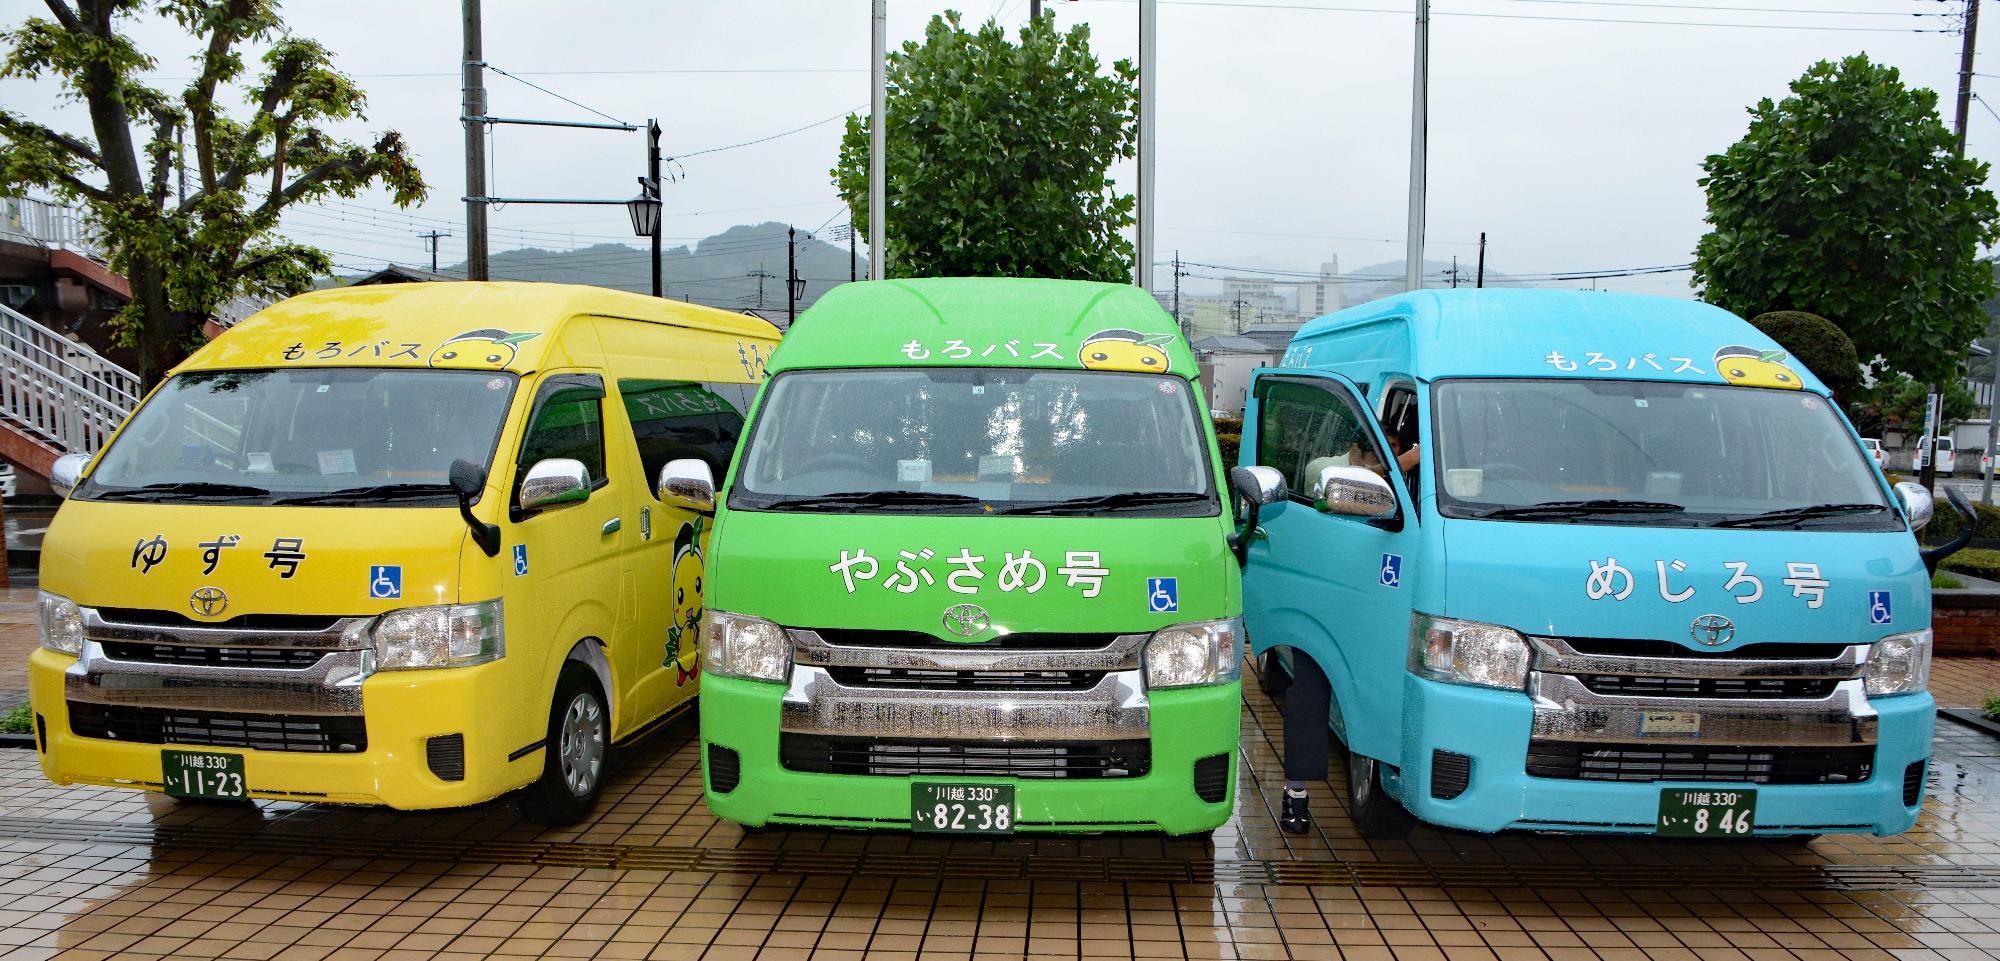 左から正面を向いている黄色の「ゆず号」、黄緑色の「やぶさめ号」、水色の「めじろ号」の町内循環バス（もろバス）の写真